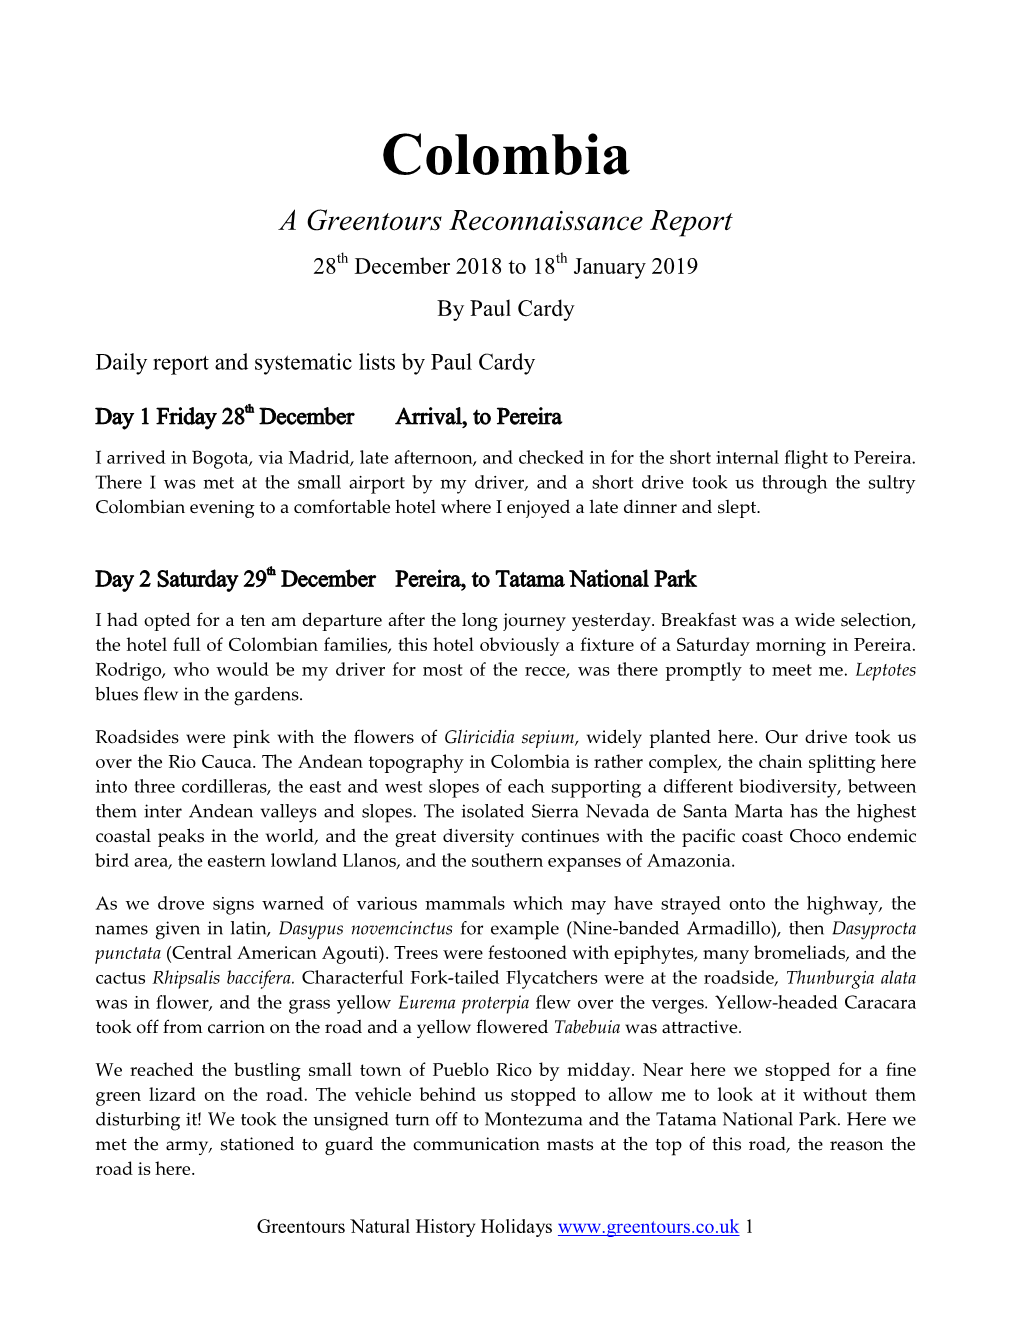 Colombia Recce 2019